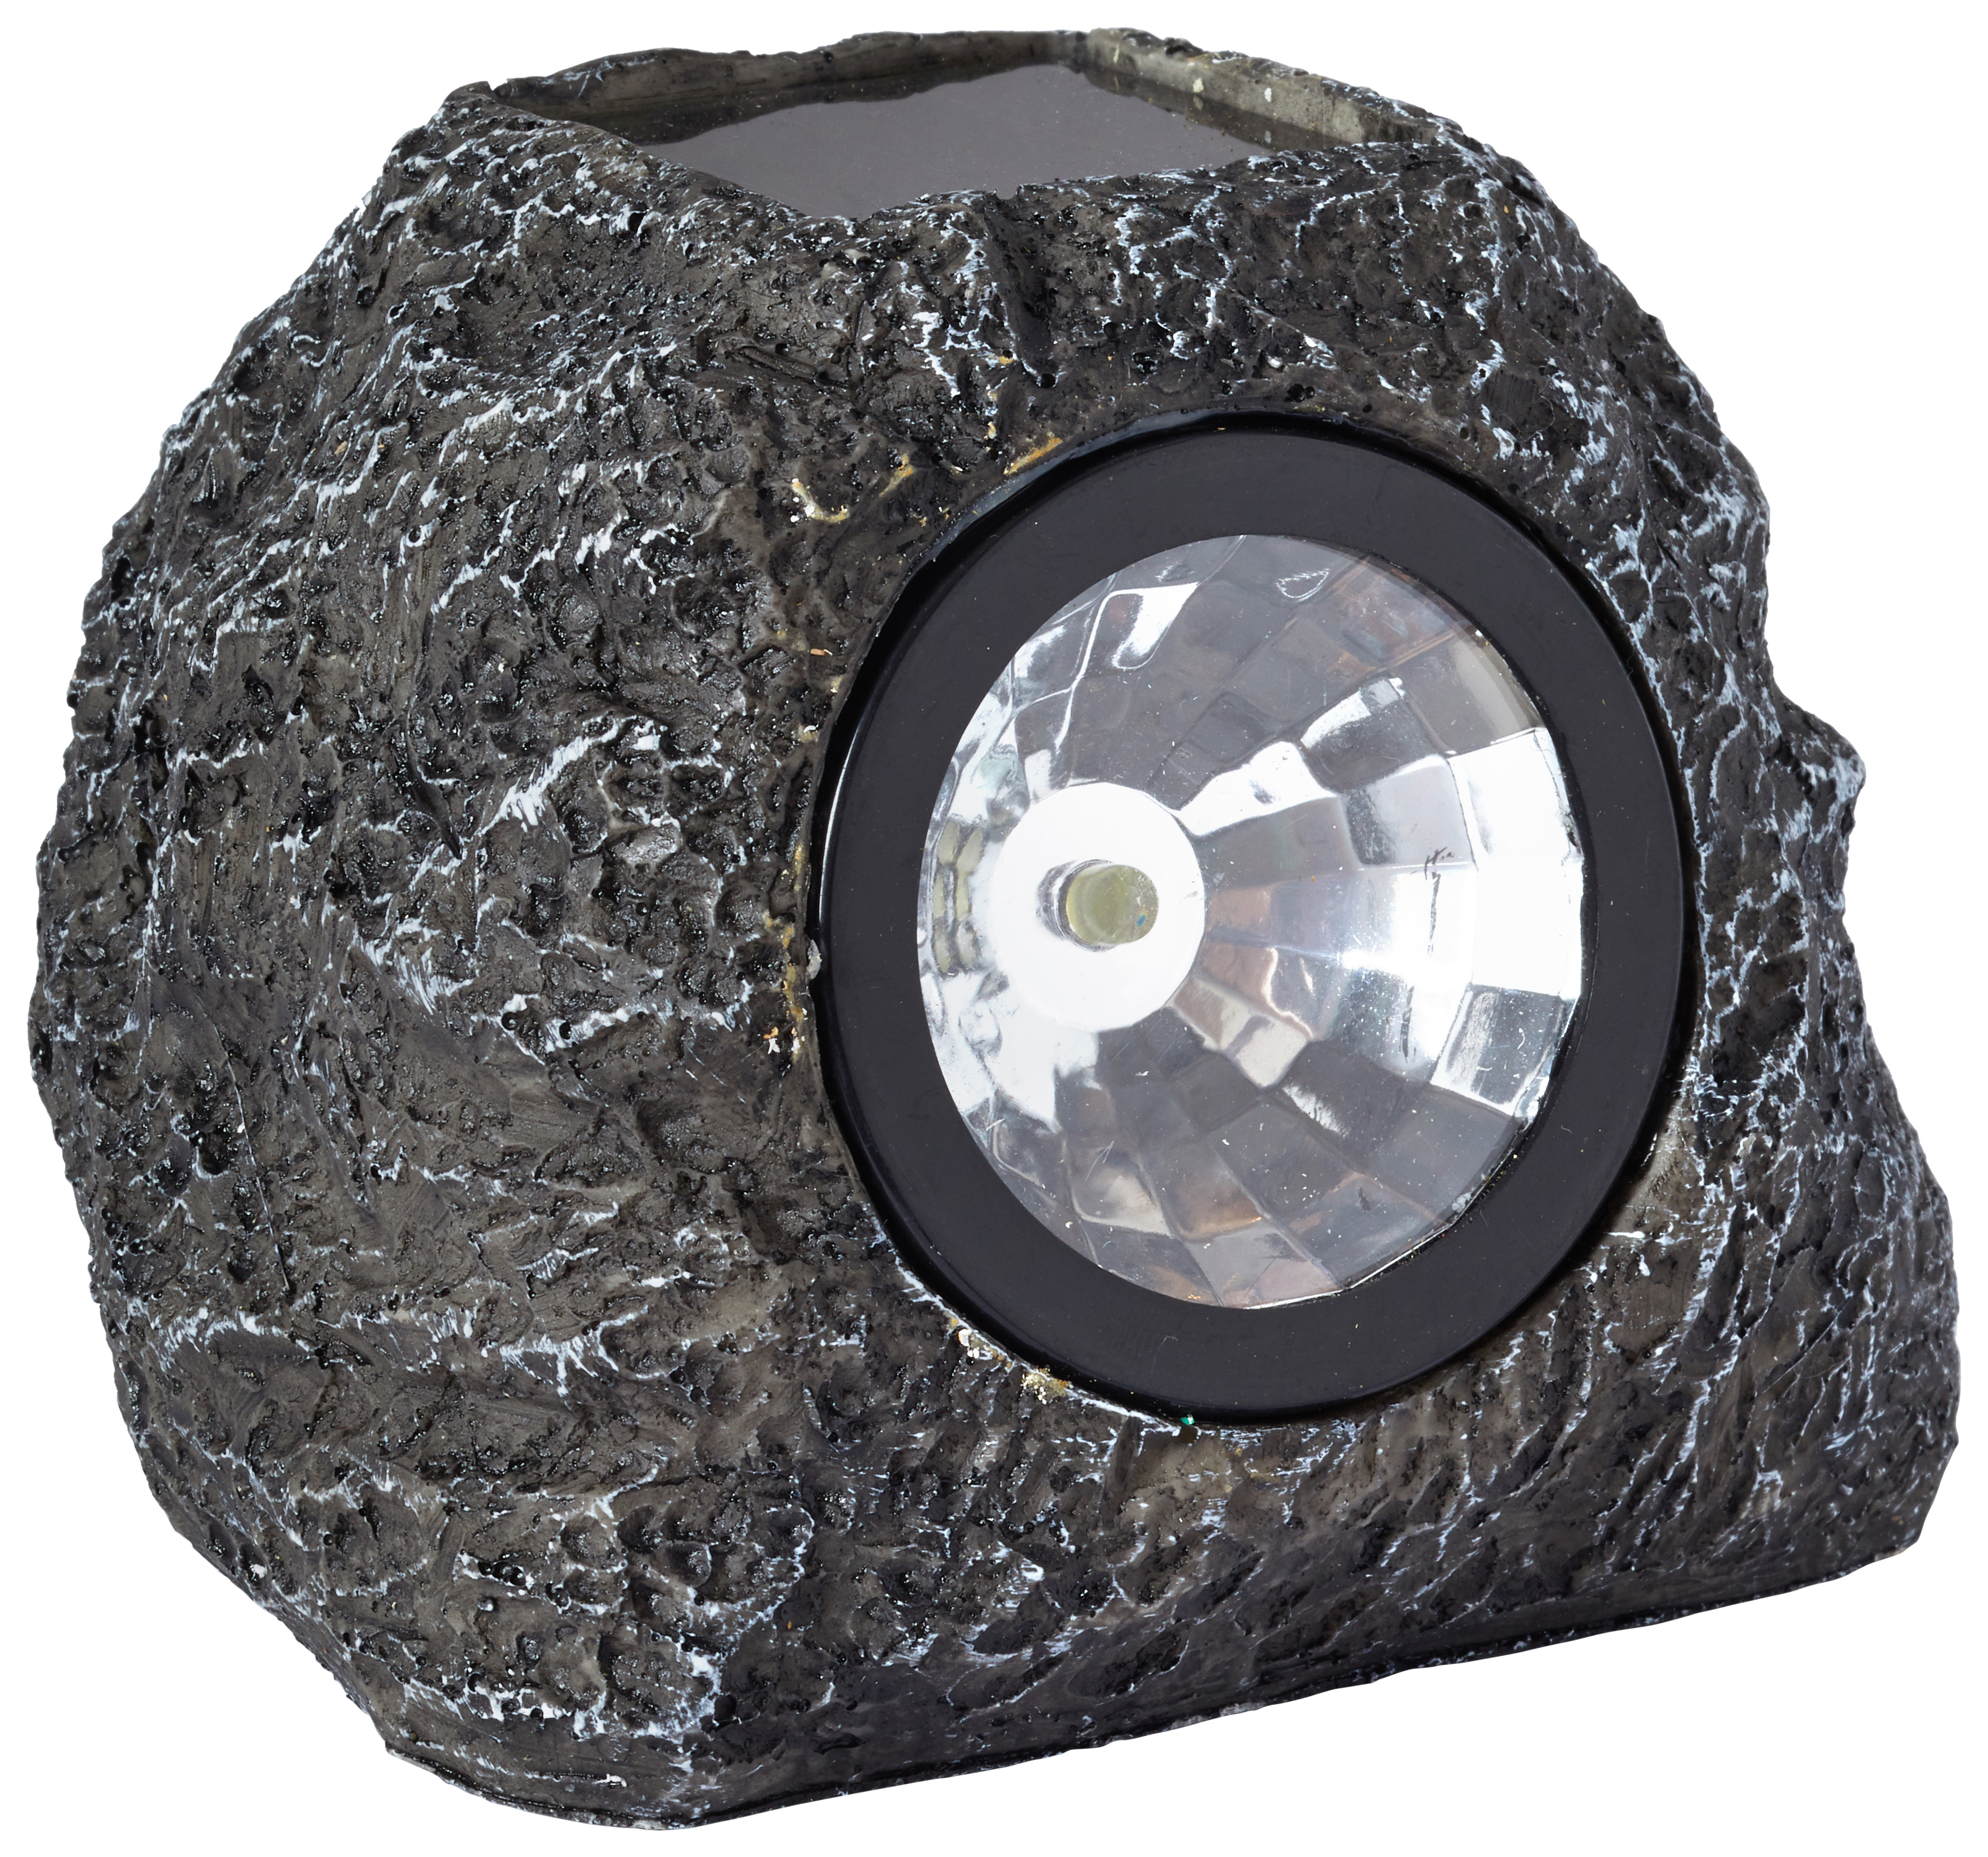 Image of Smart Solar 3 Lumen Outdoor Rock Spotlights - Pack of 4